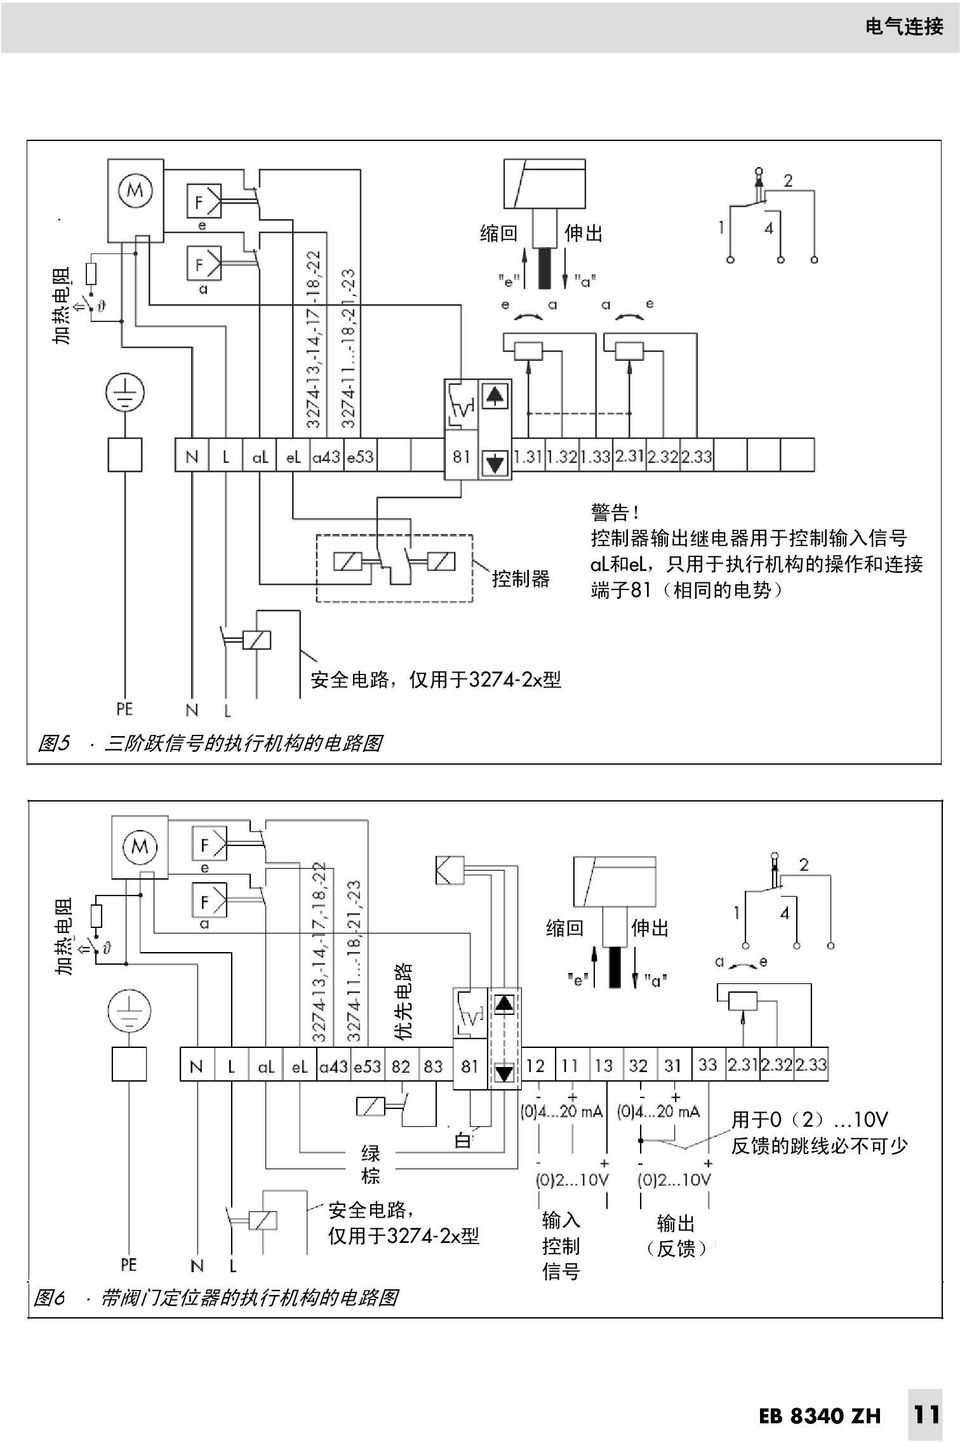 势 ) 安 全 电 路, 仅 用 于 3274-2x 型 图 5 三 阶 跃 信 号 的 执 行 机 构 的 电 路 图 加 热 电 阻 优 先 电 路 缩 回 伸